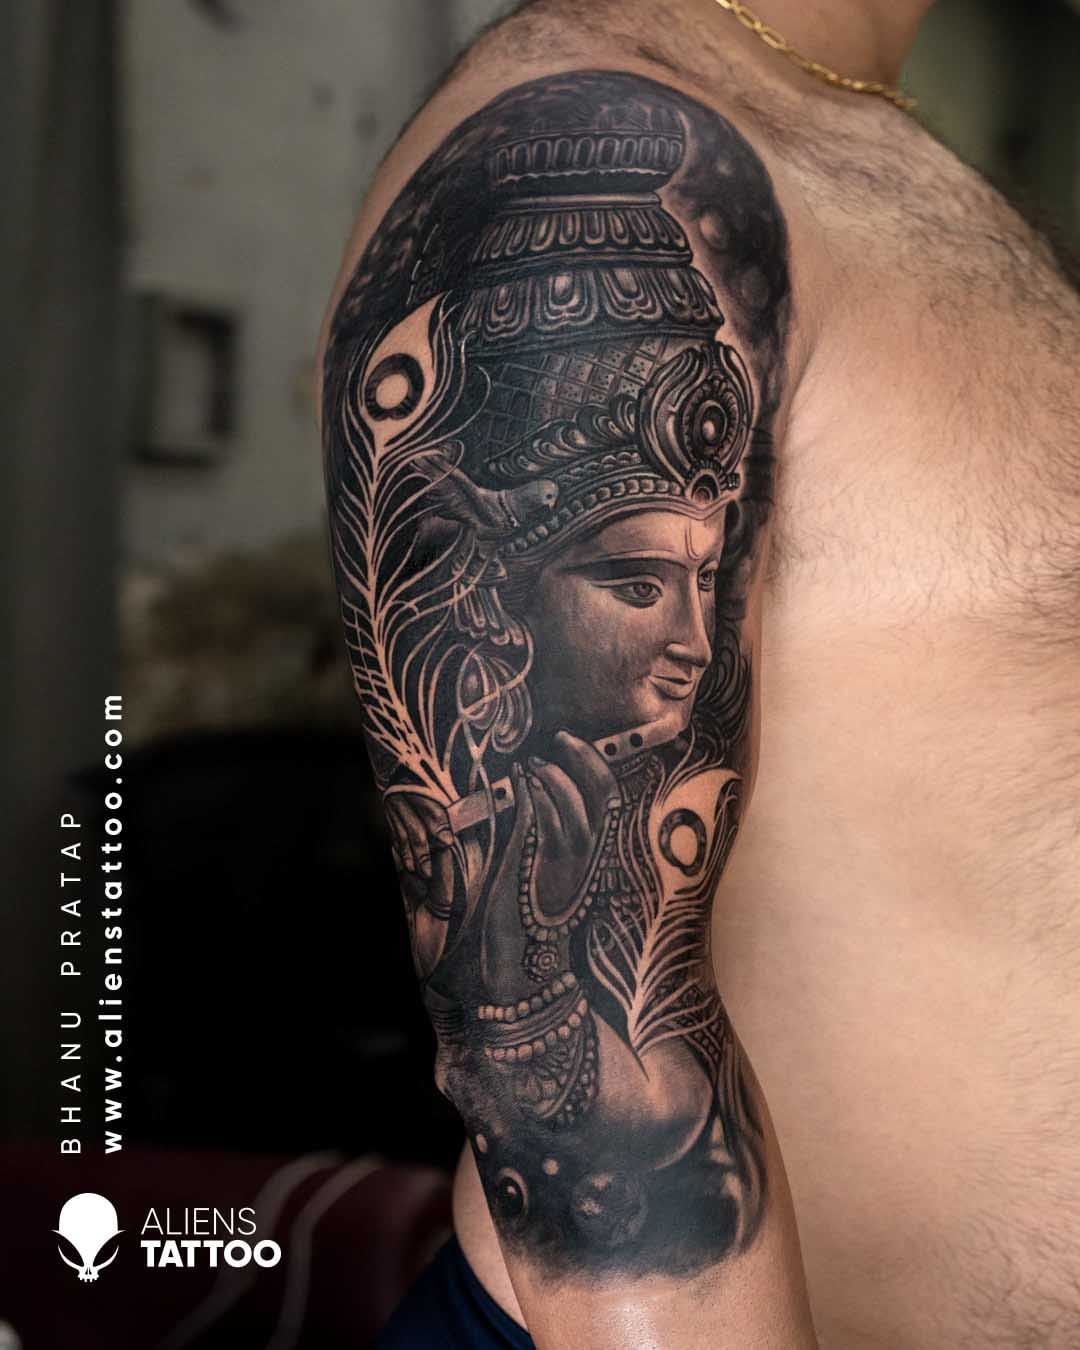  krishna Tattoo designs   Ztattoo street  krishna radhakrishna  harekrishna radhekrishna lordkrishna krishnalove  Instagram